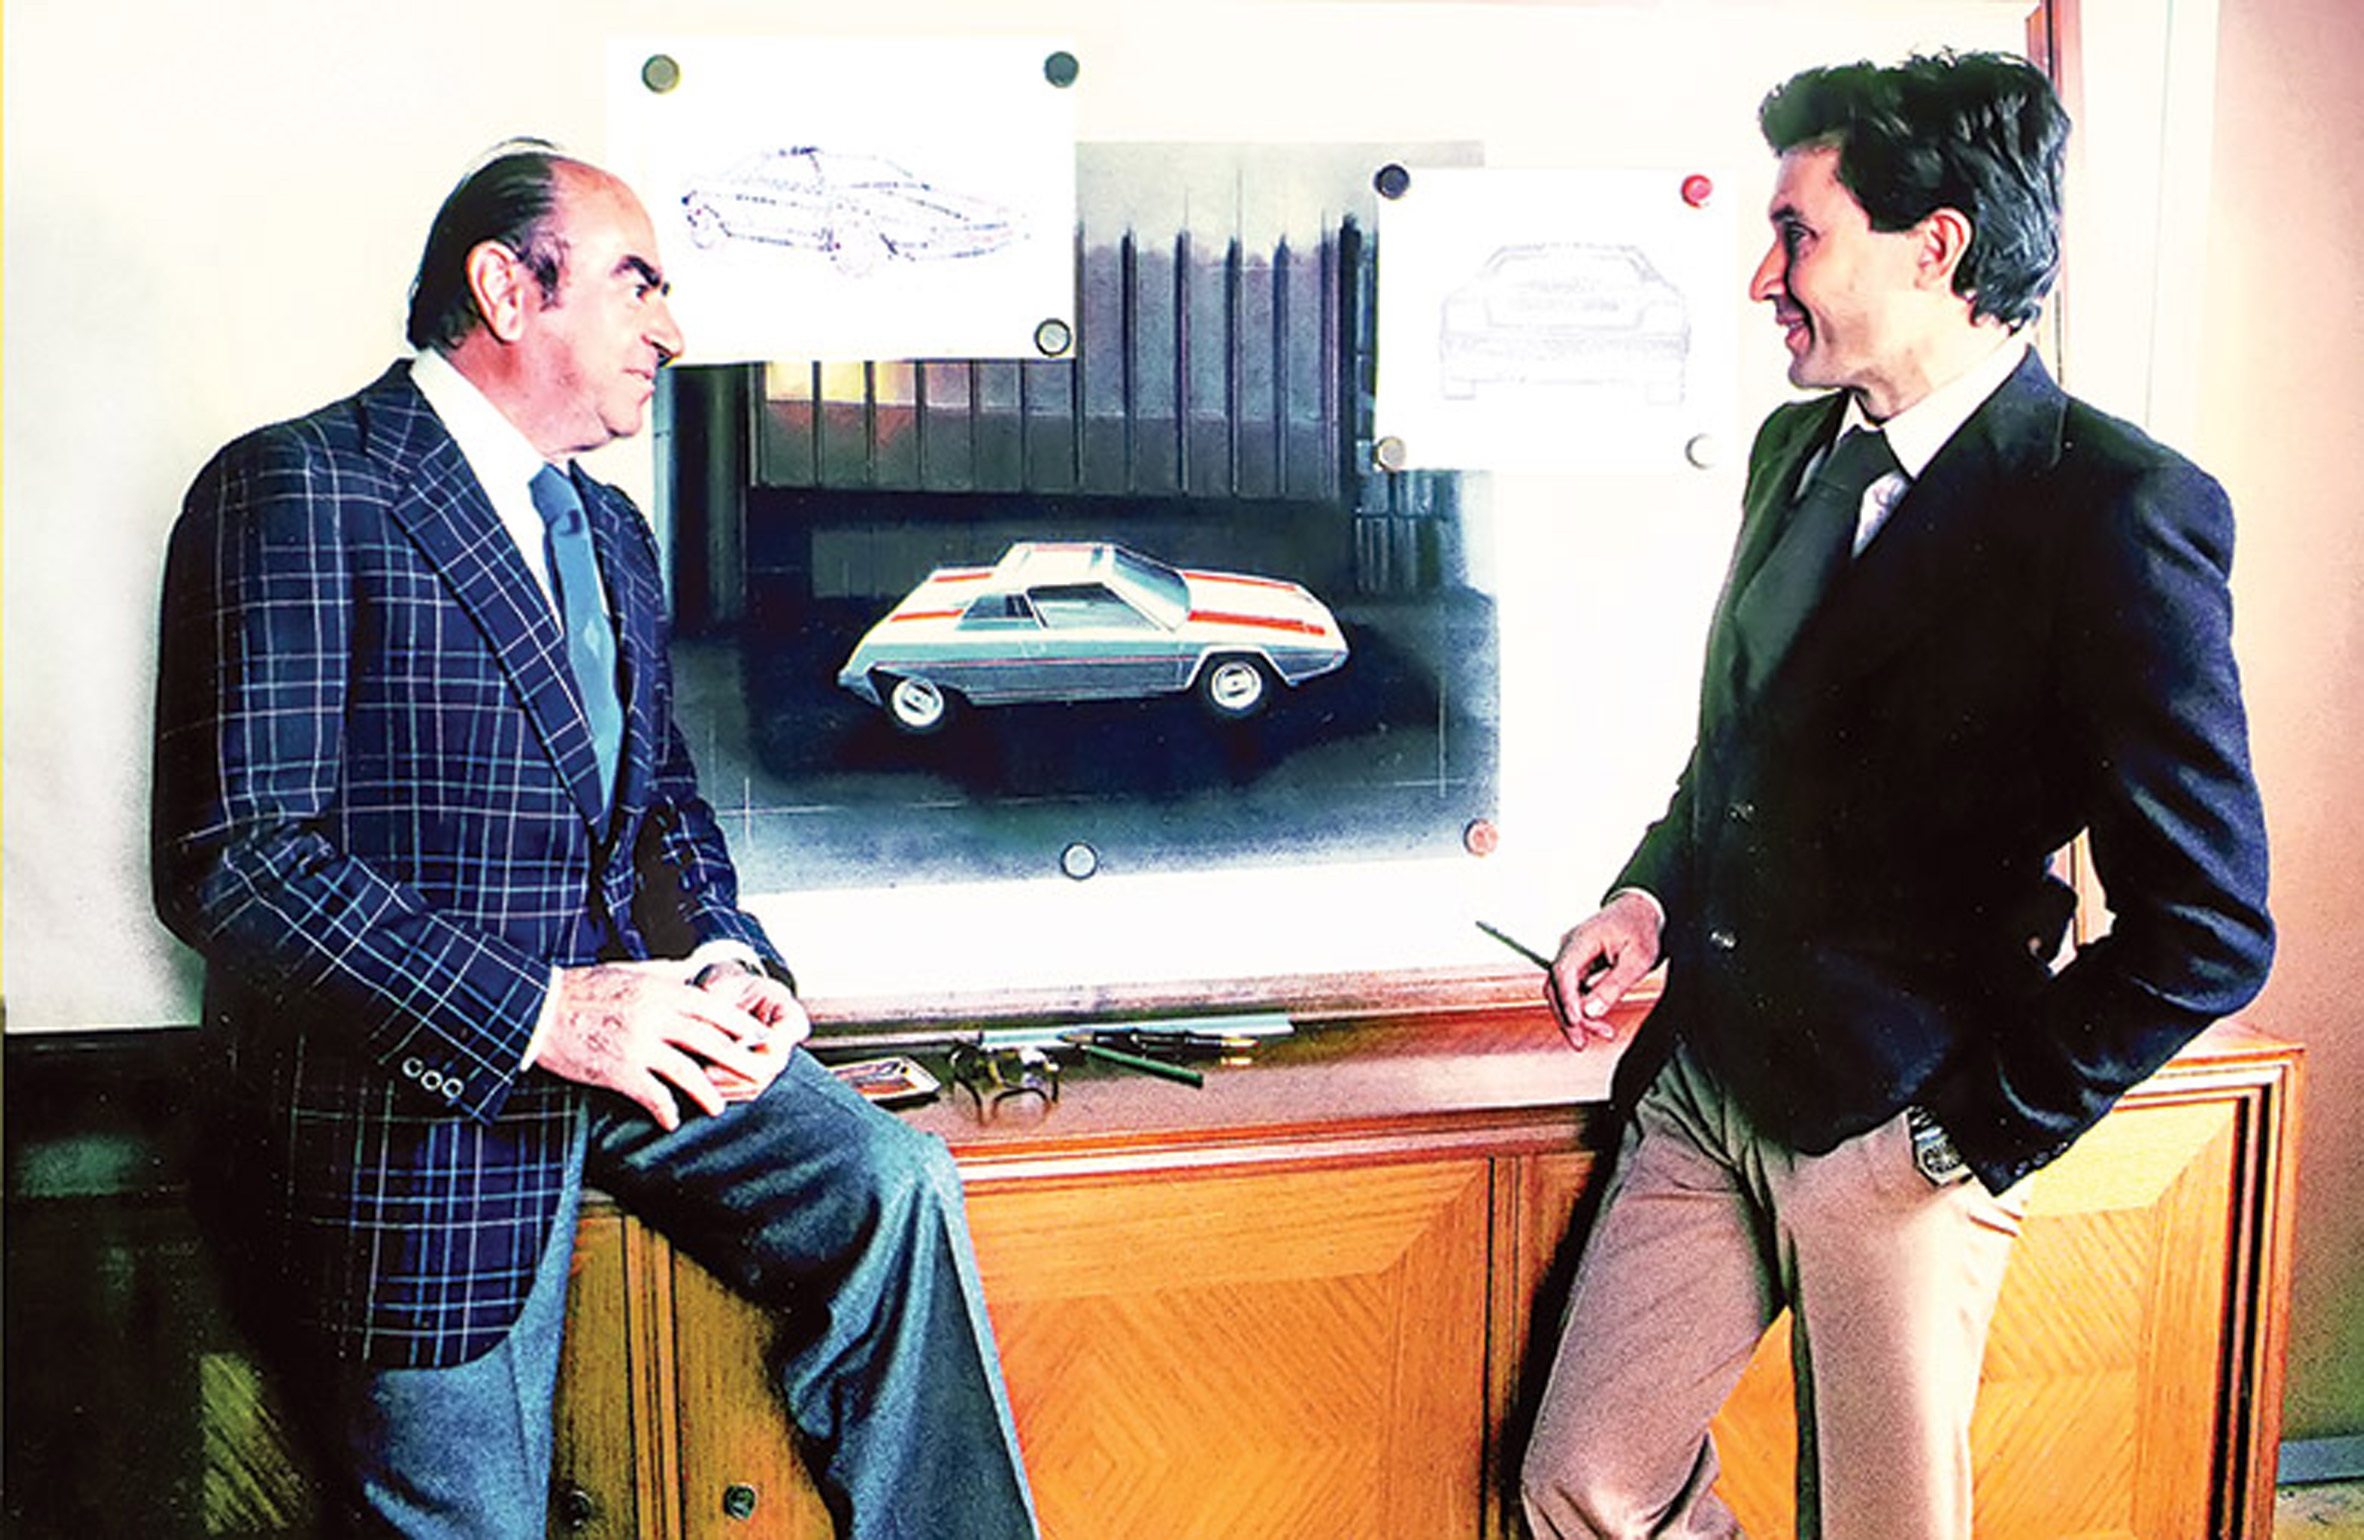 Nuccio Bertone and Marcello Gandini with the Ferrari Rainbow drawings in 1975/76